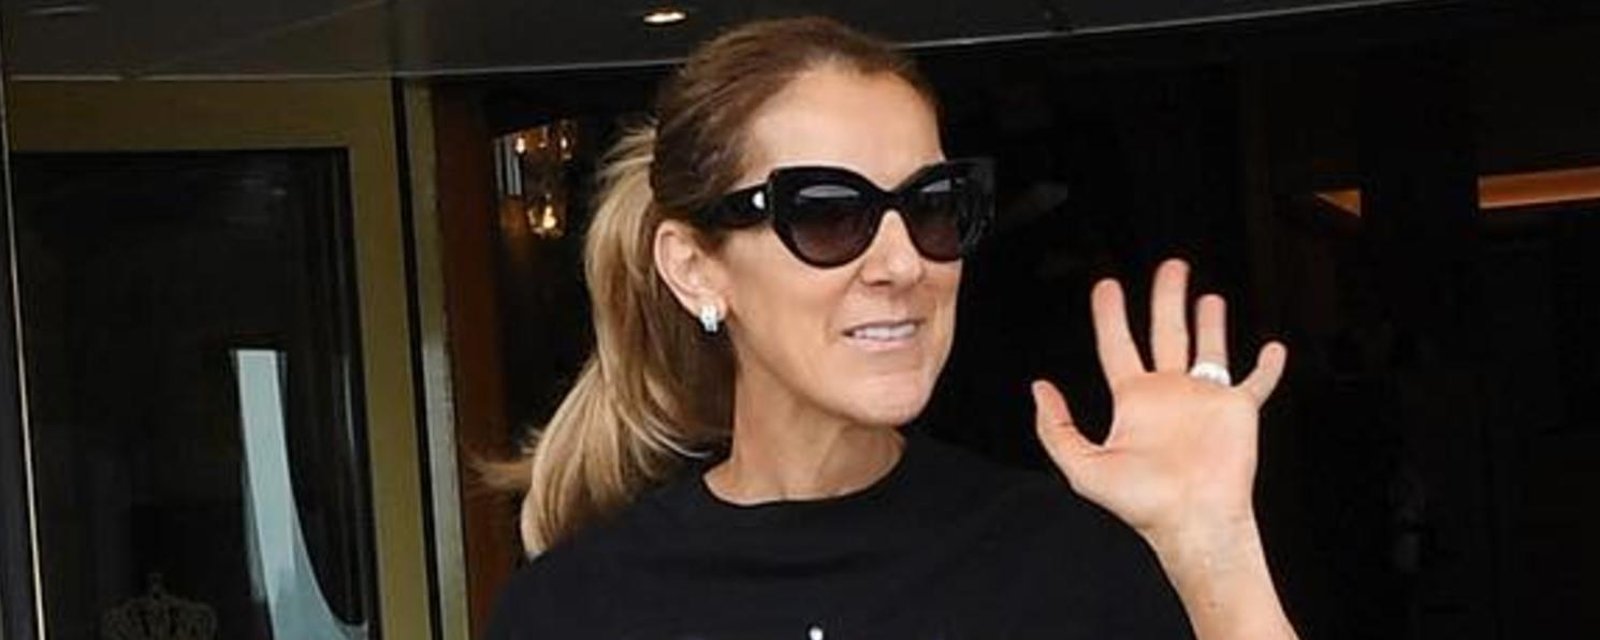 Le nouveau chandail de Céline Dion fait bien des jaloux... vous verrez vite pourquoi!